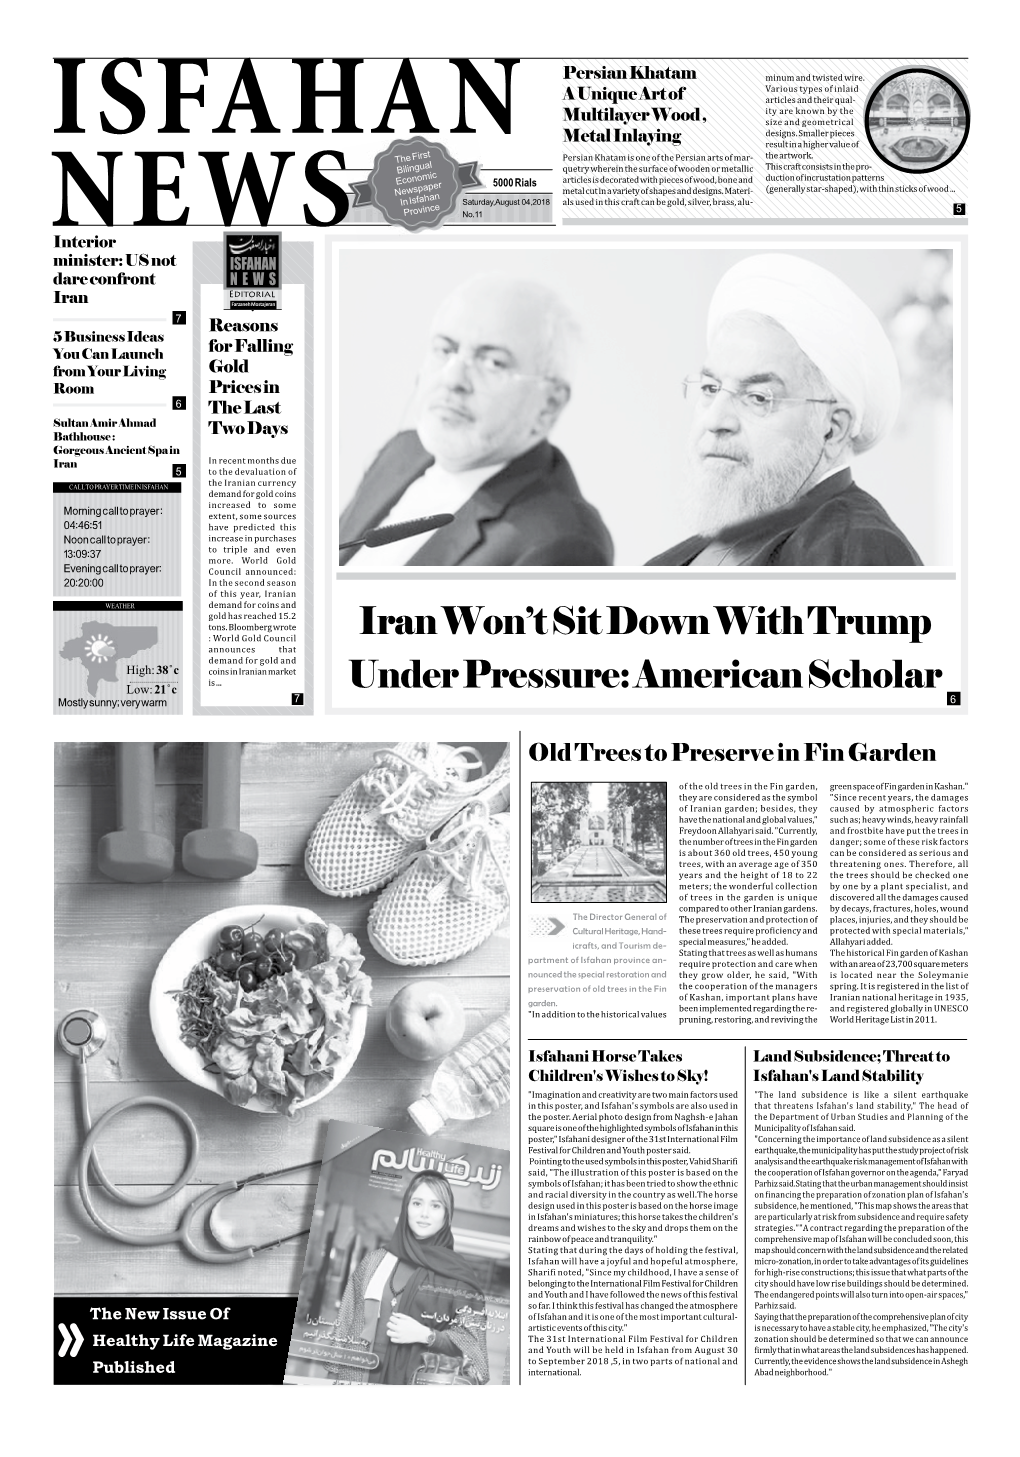 Iran Won't Sit Down with Trump Under Pressure: American Scholar